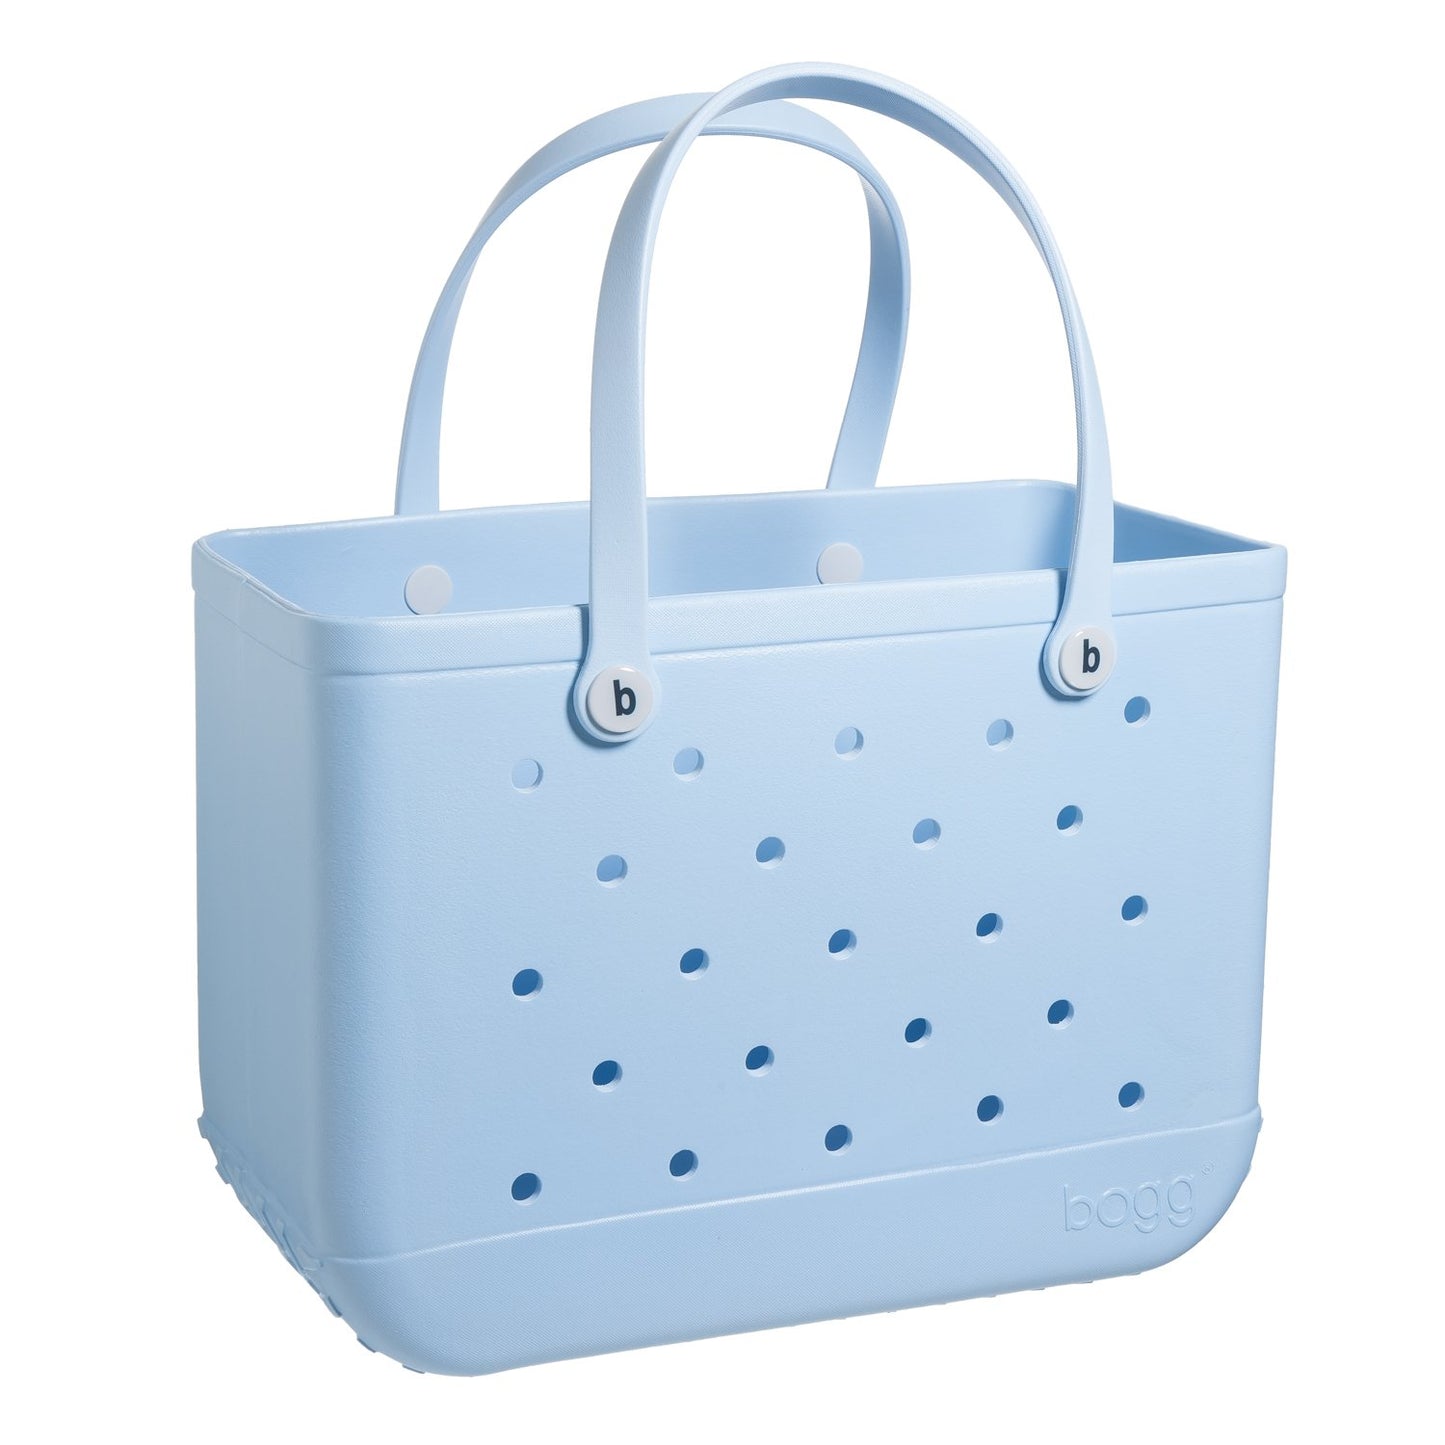 Pale Blue Original Bogg® Bag